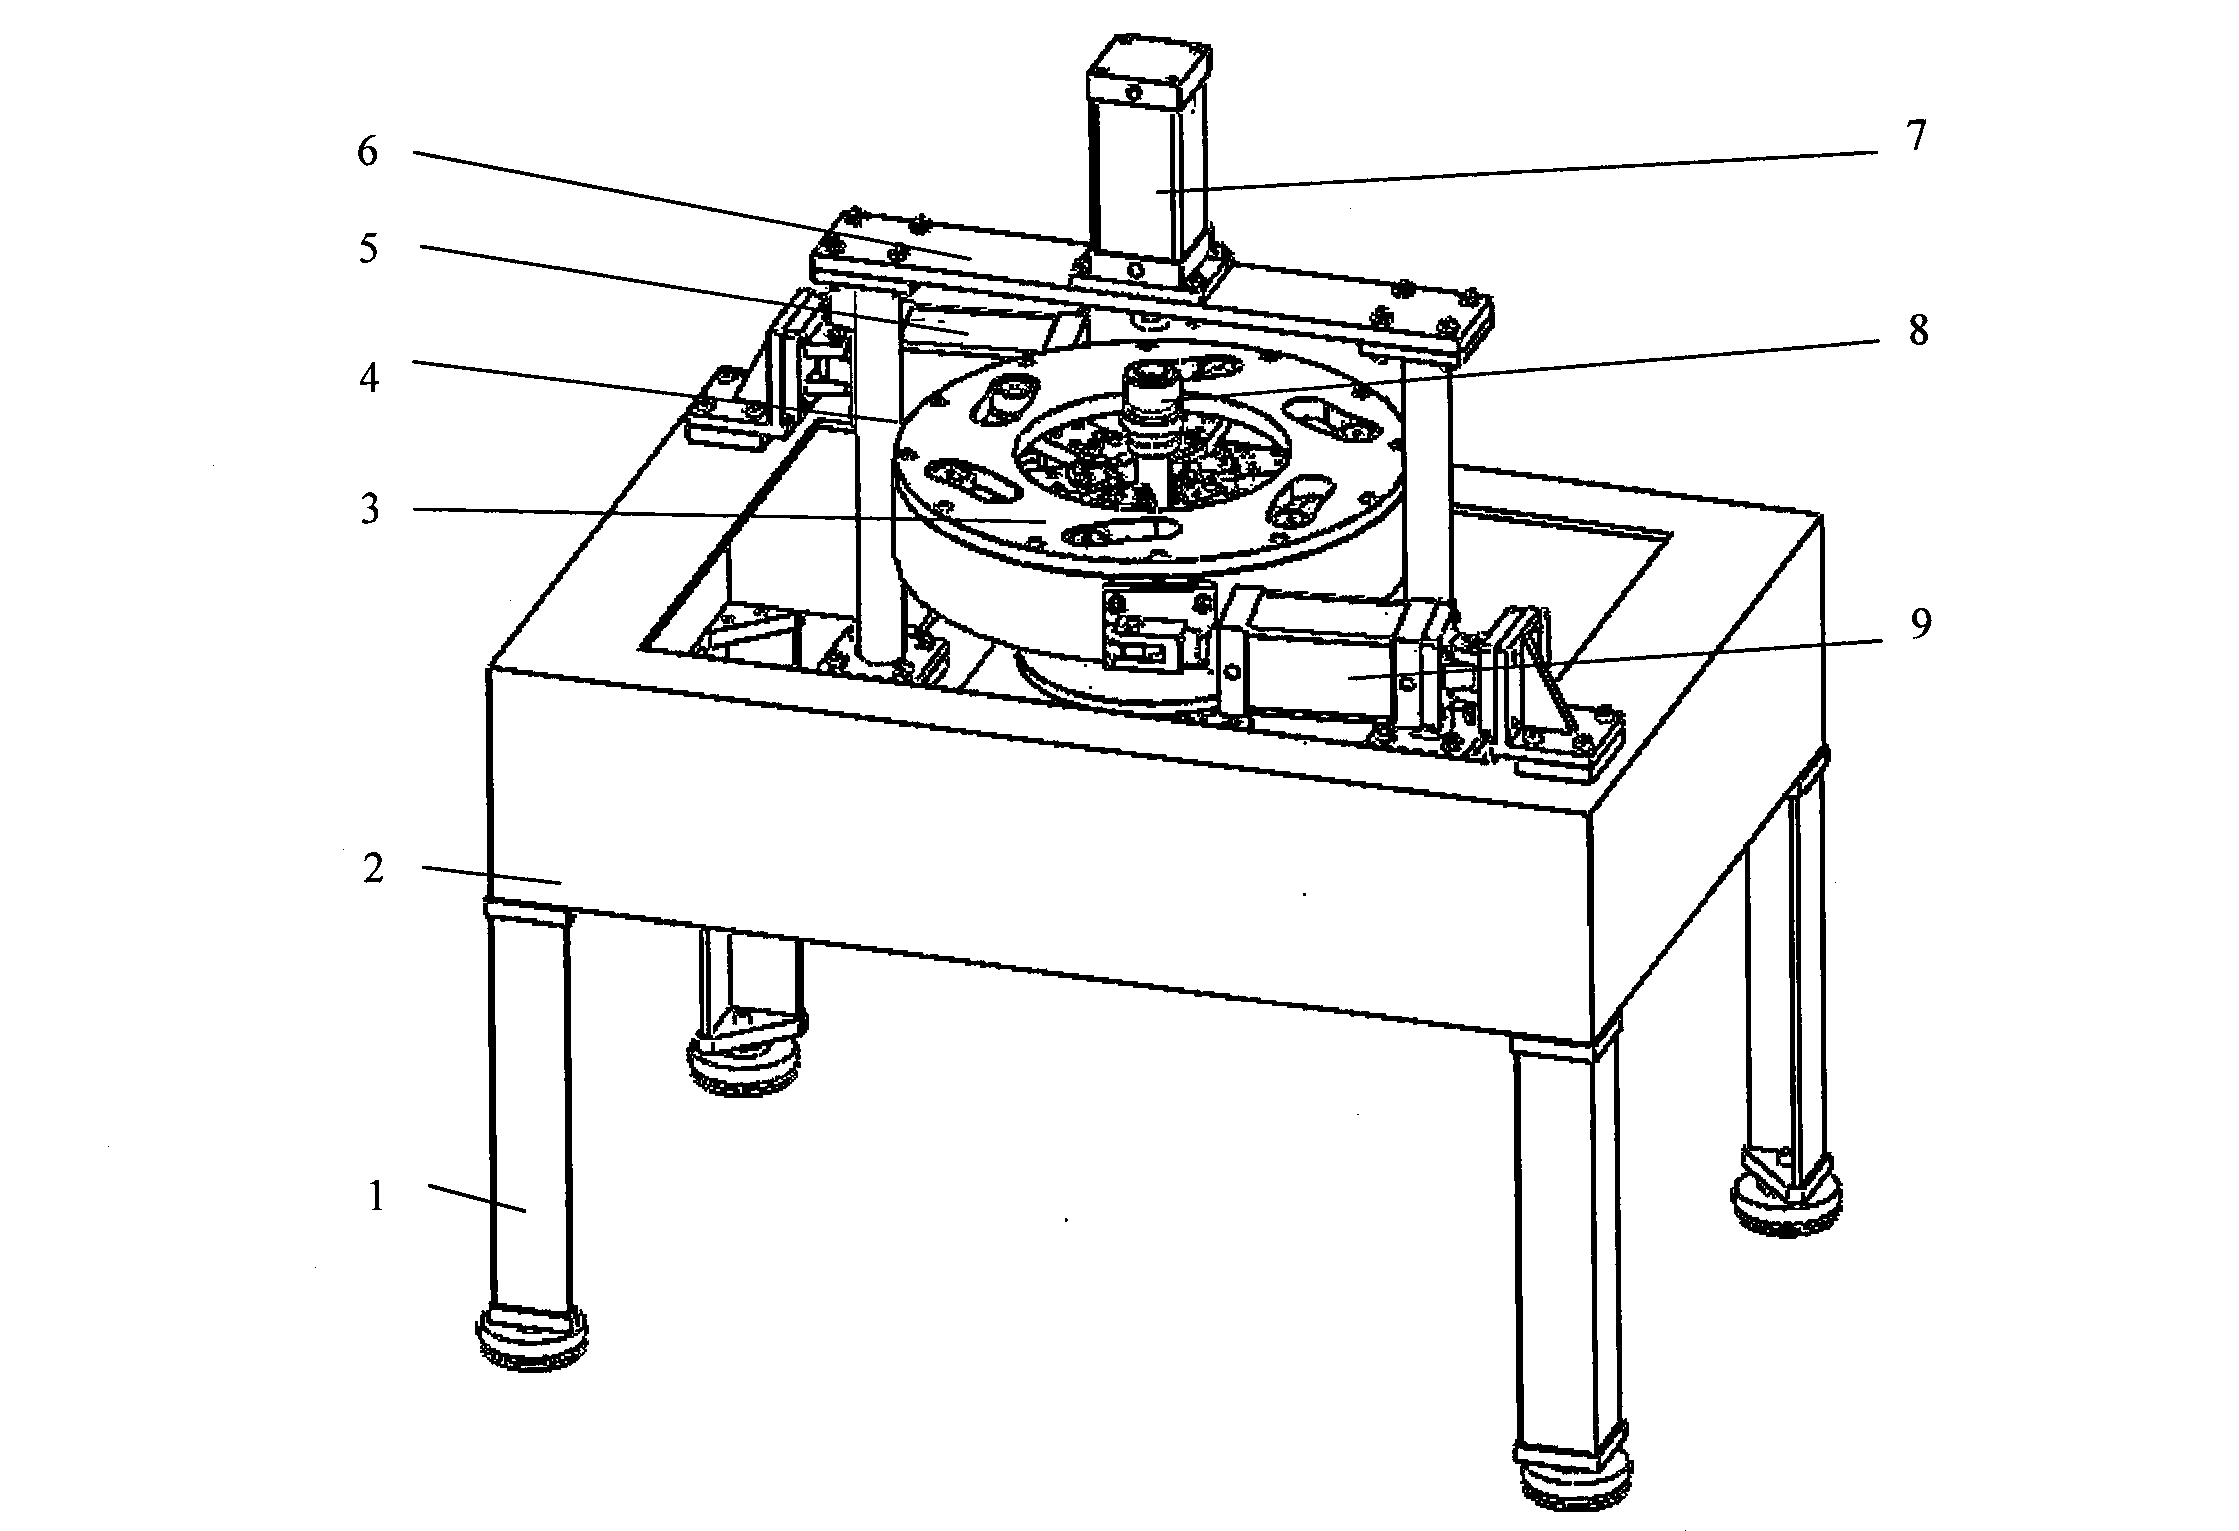 Rivet press assembling mechanism